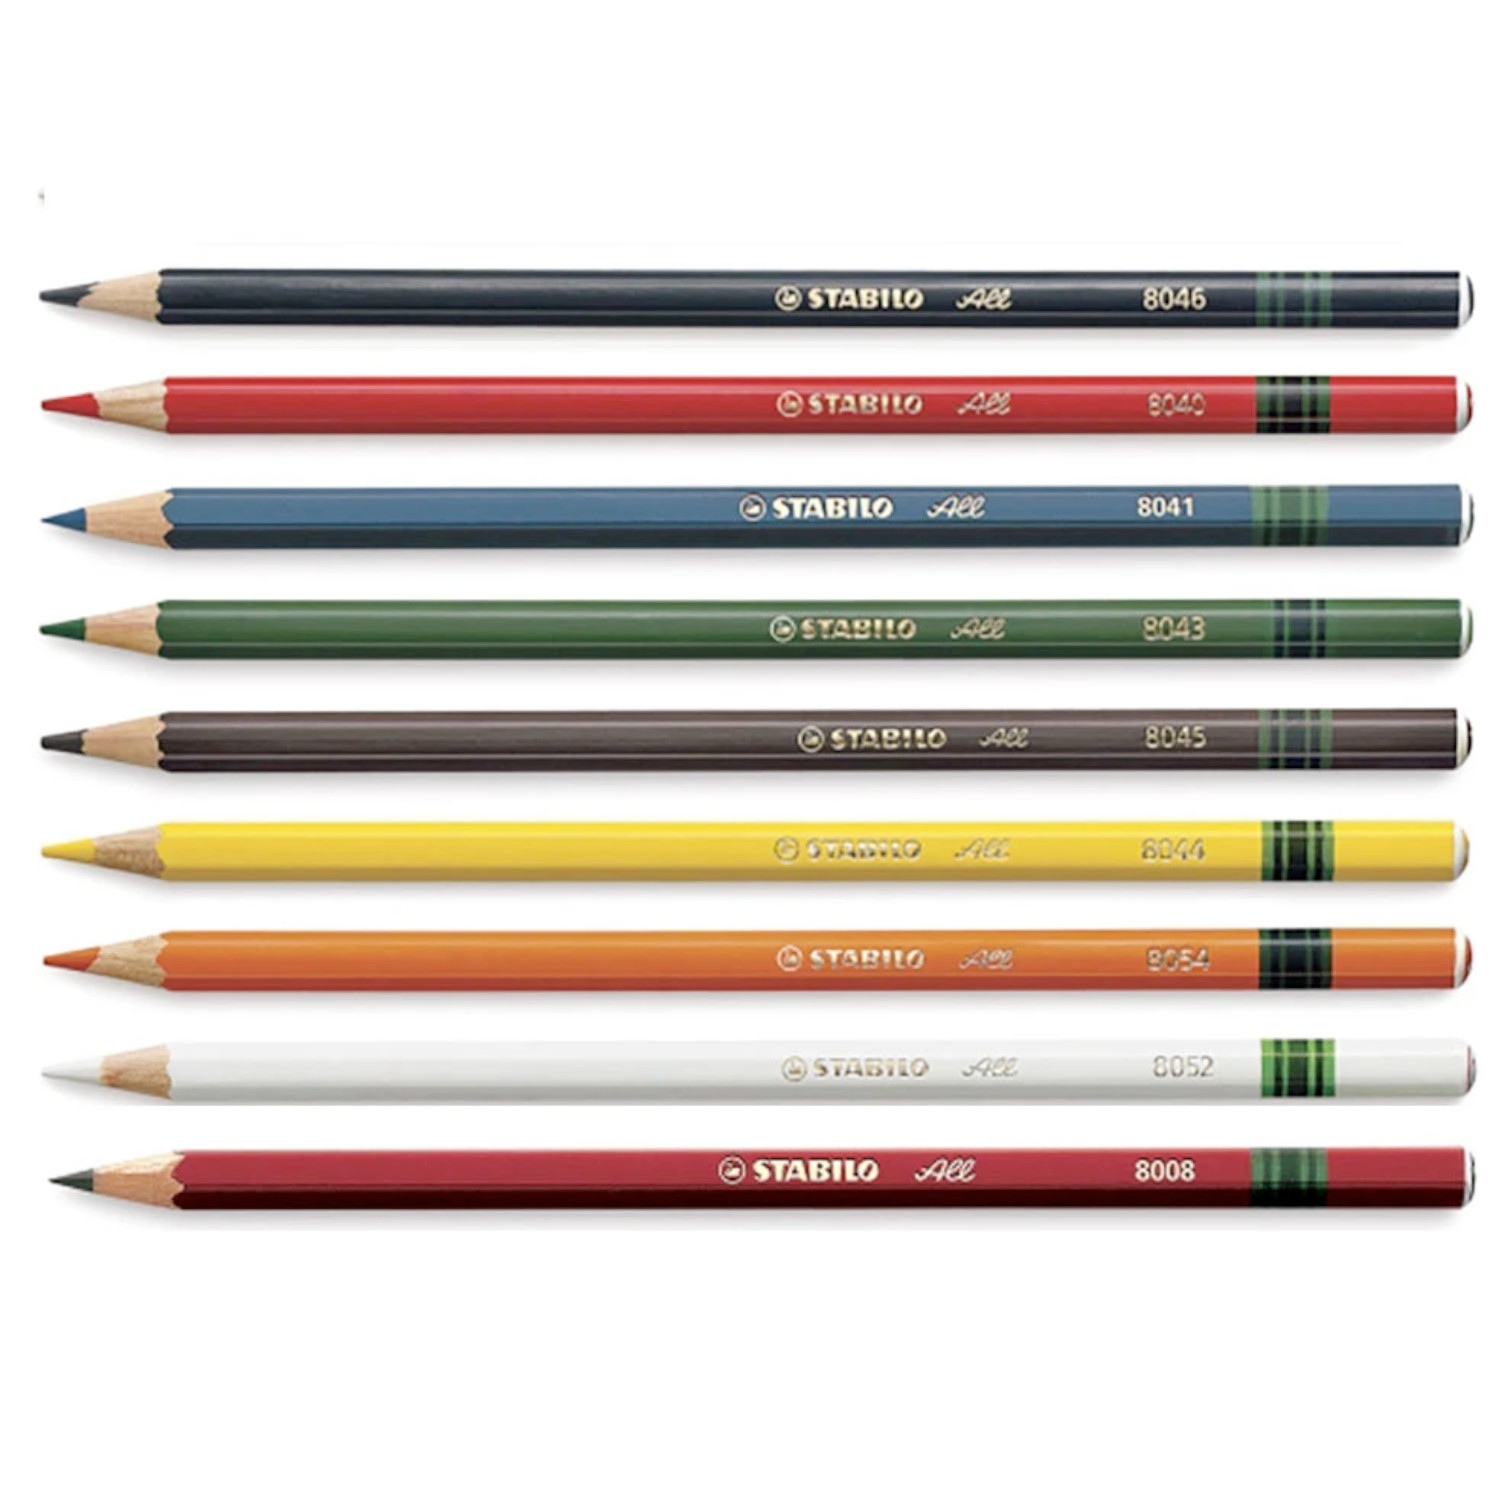 3 X Stabilo-All Pencil White